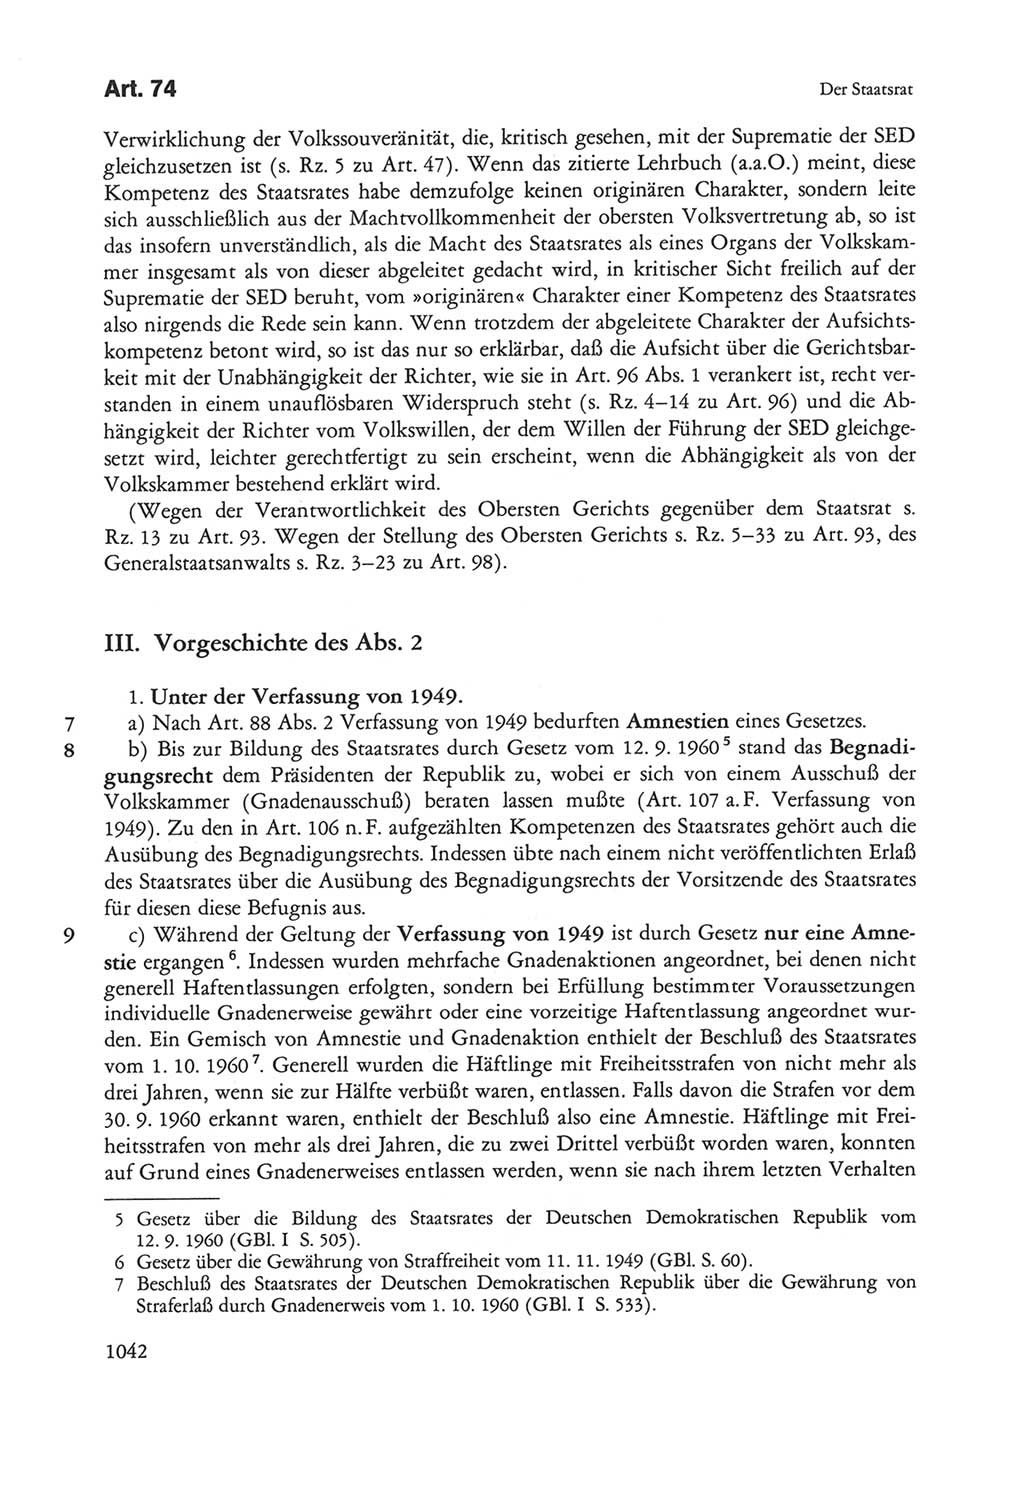 Die sozialistische Verfassung der Deutschen Demokratischen Republik (DDR), Kommentar 1982, Seite 1042 (Soz. Verf. DDR Komm. 1982, S. 1042)